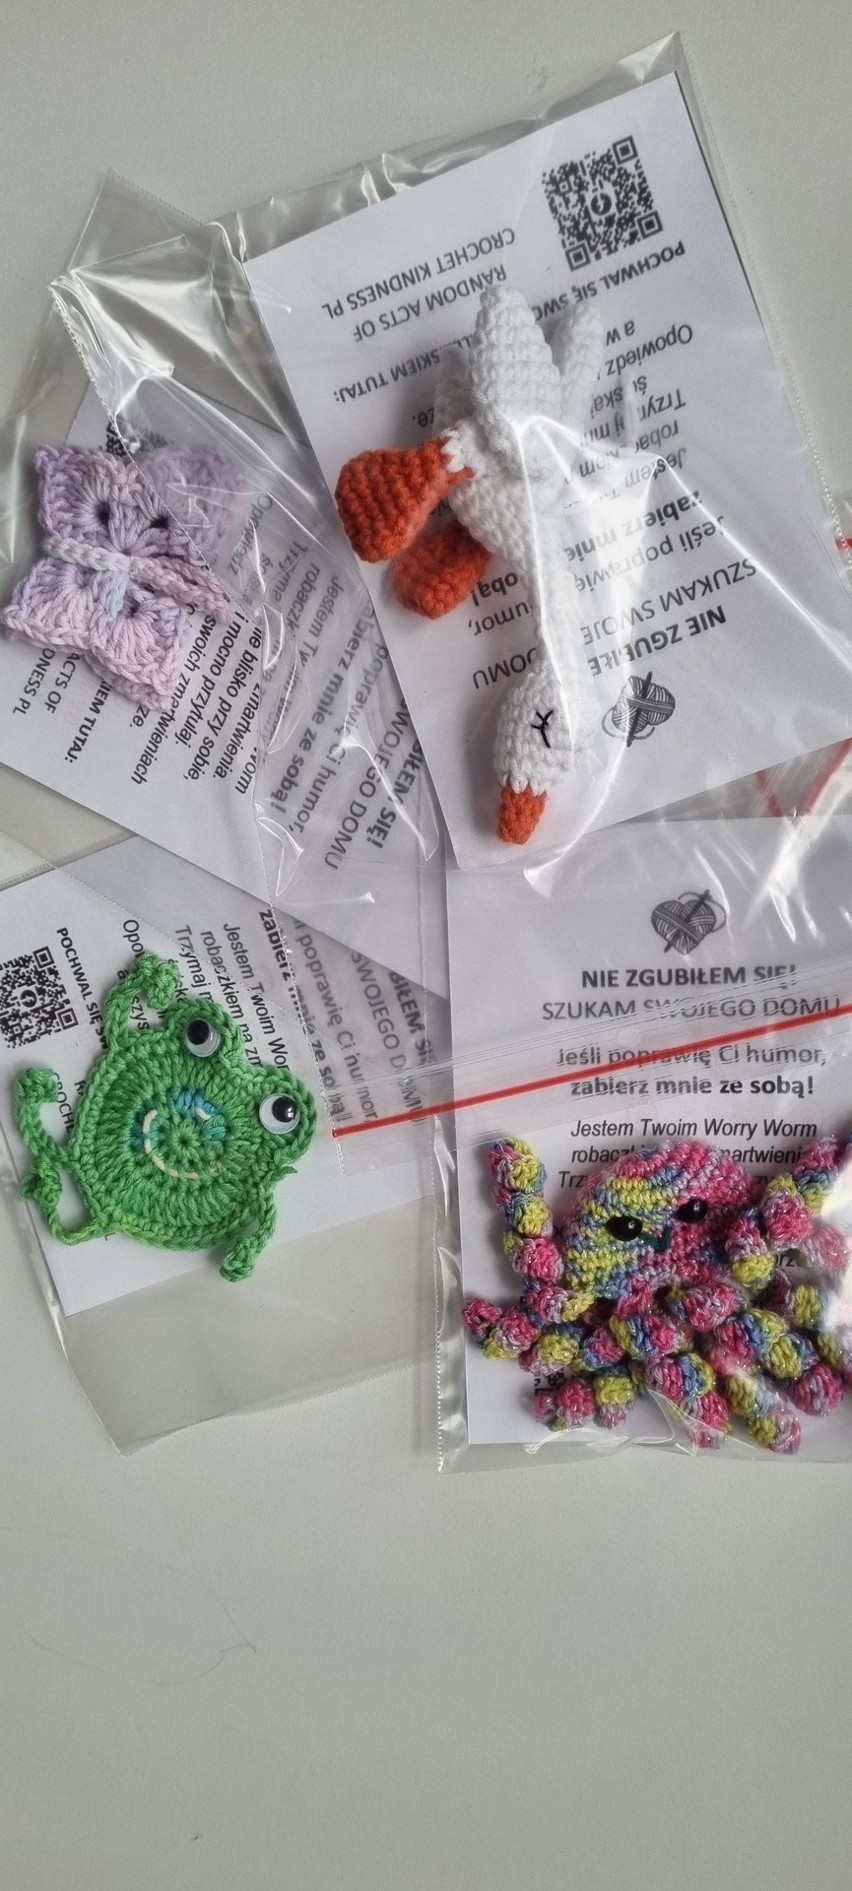 Random Acts of Crochet Kindness działa również w Toruniu